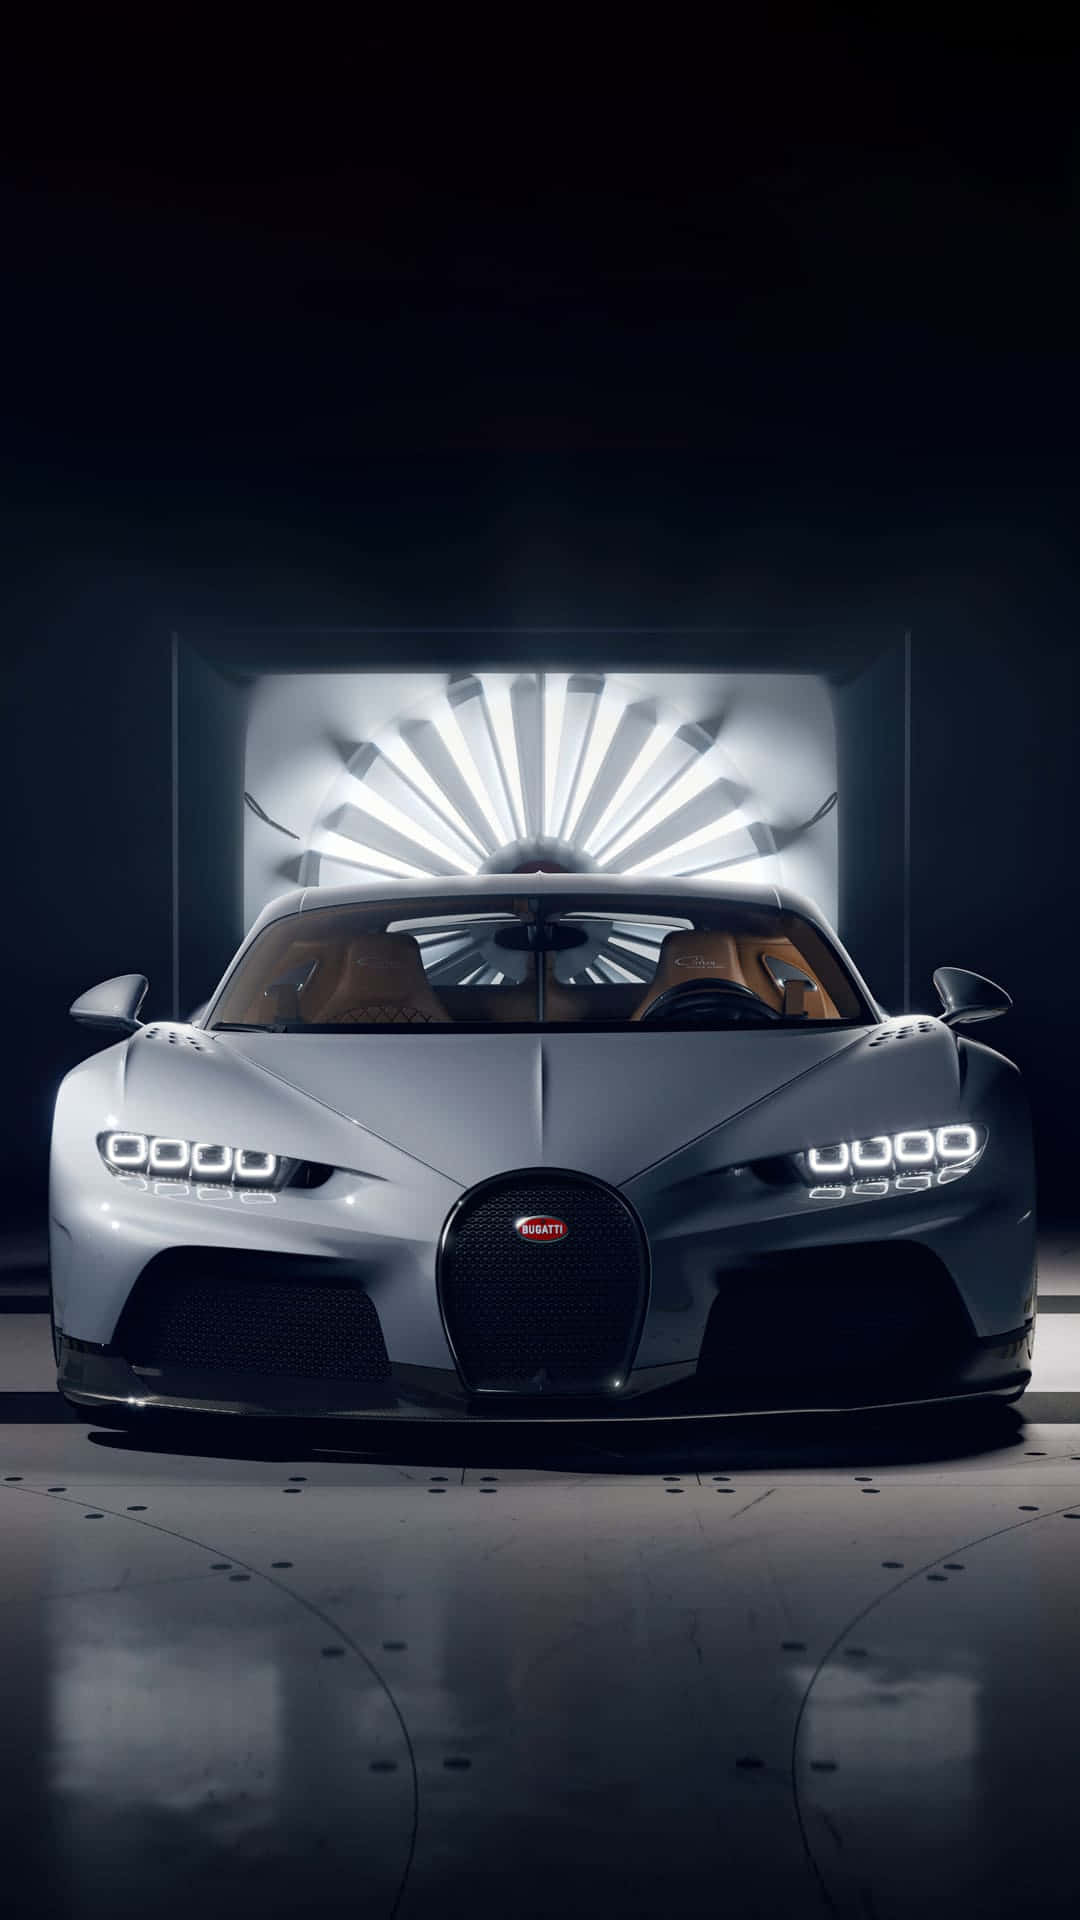 Erlebensie Unvergleichliche Geschwindigkeit Und Luxus Mit Dem Ikonischen Best Bugatti Wallpaper